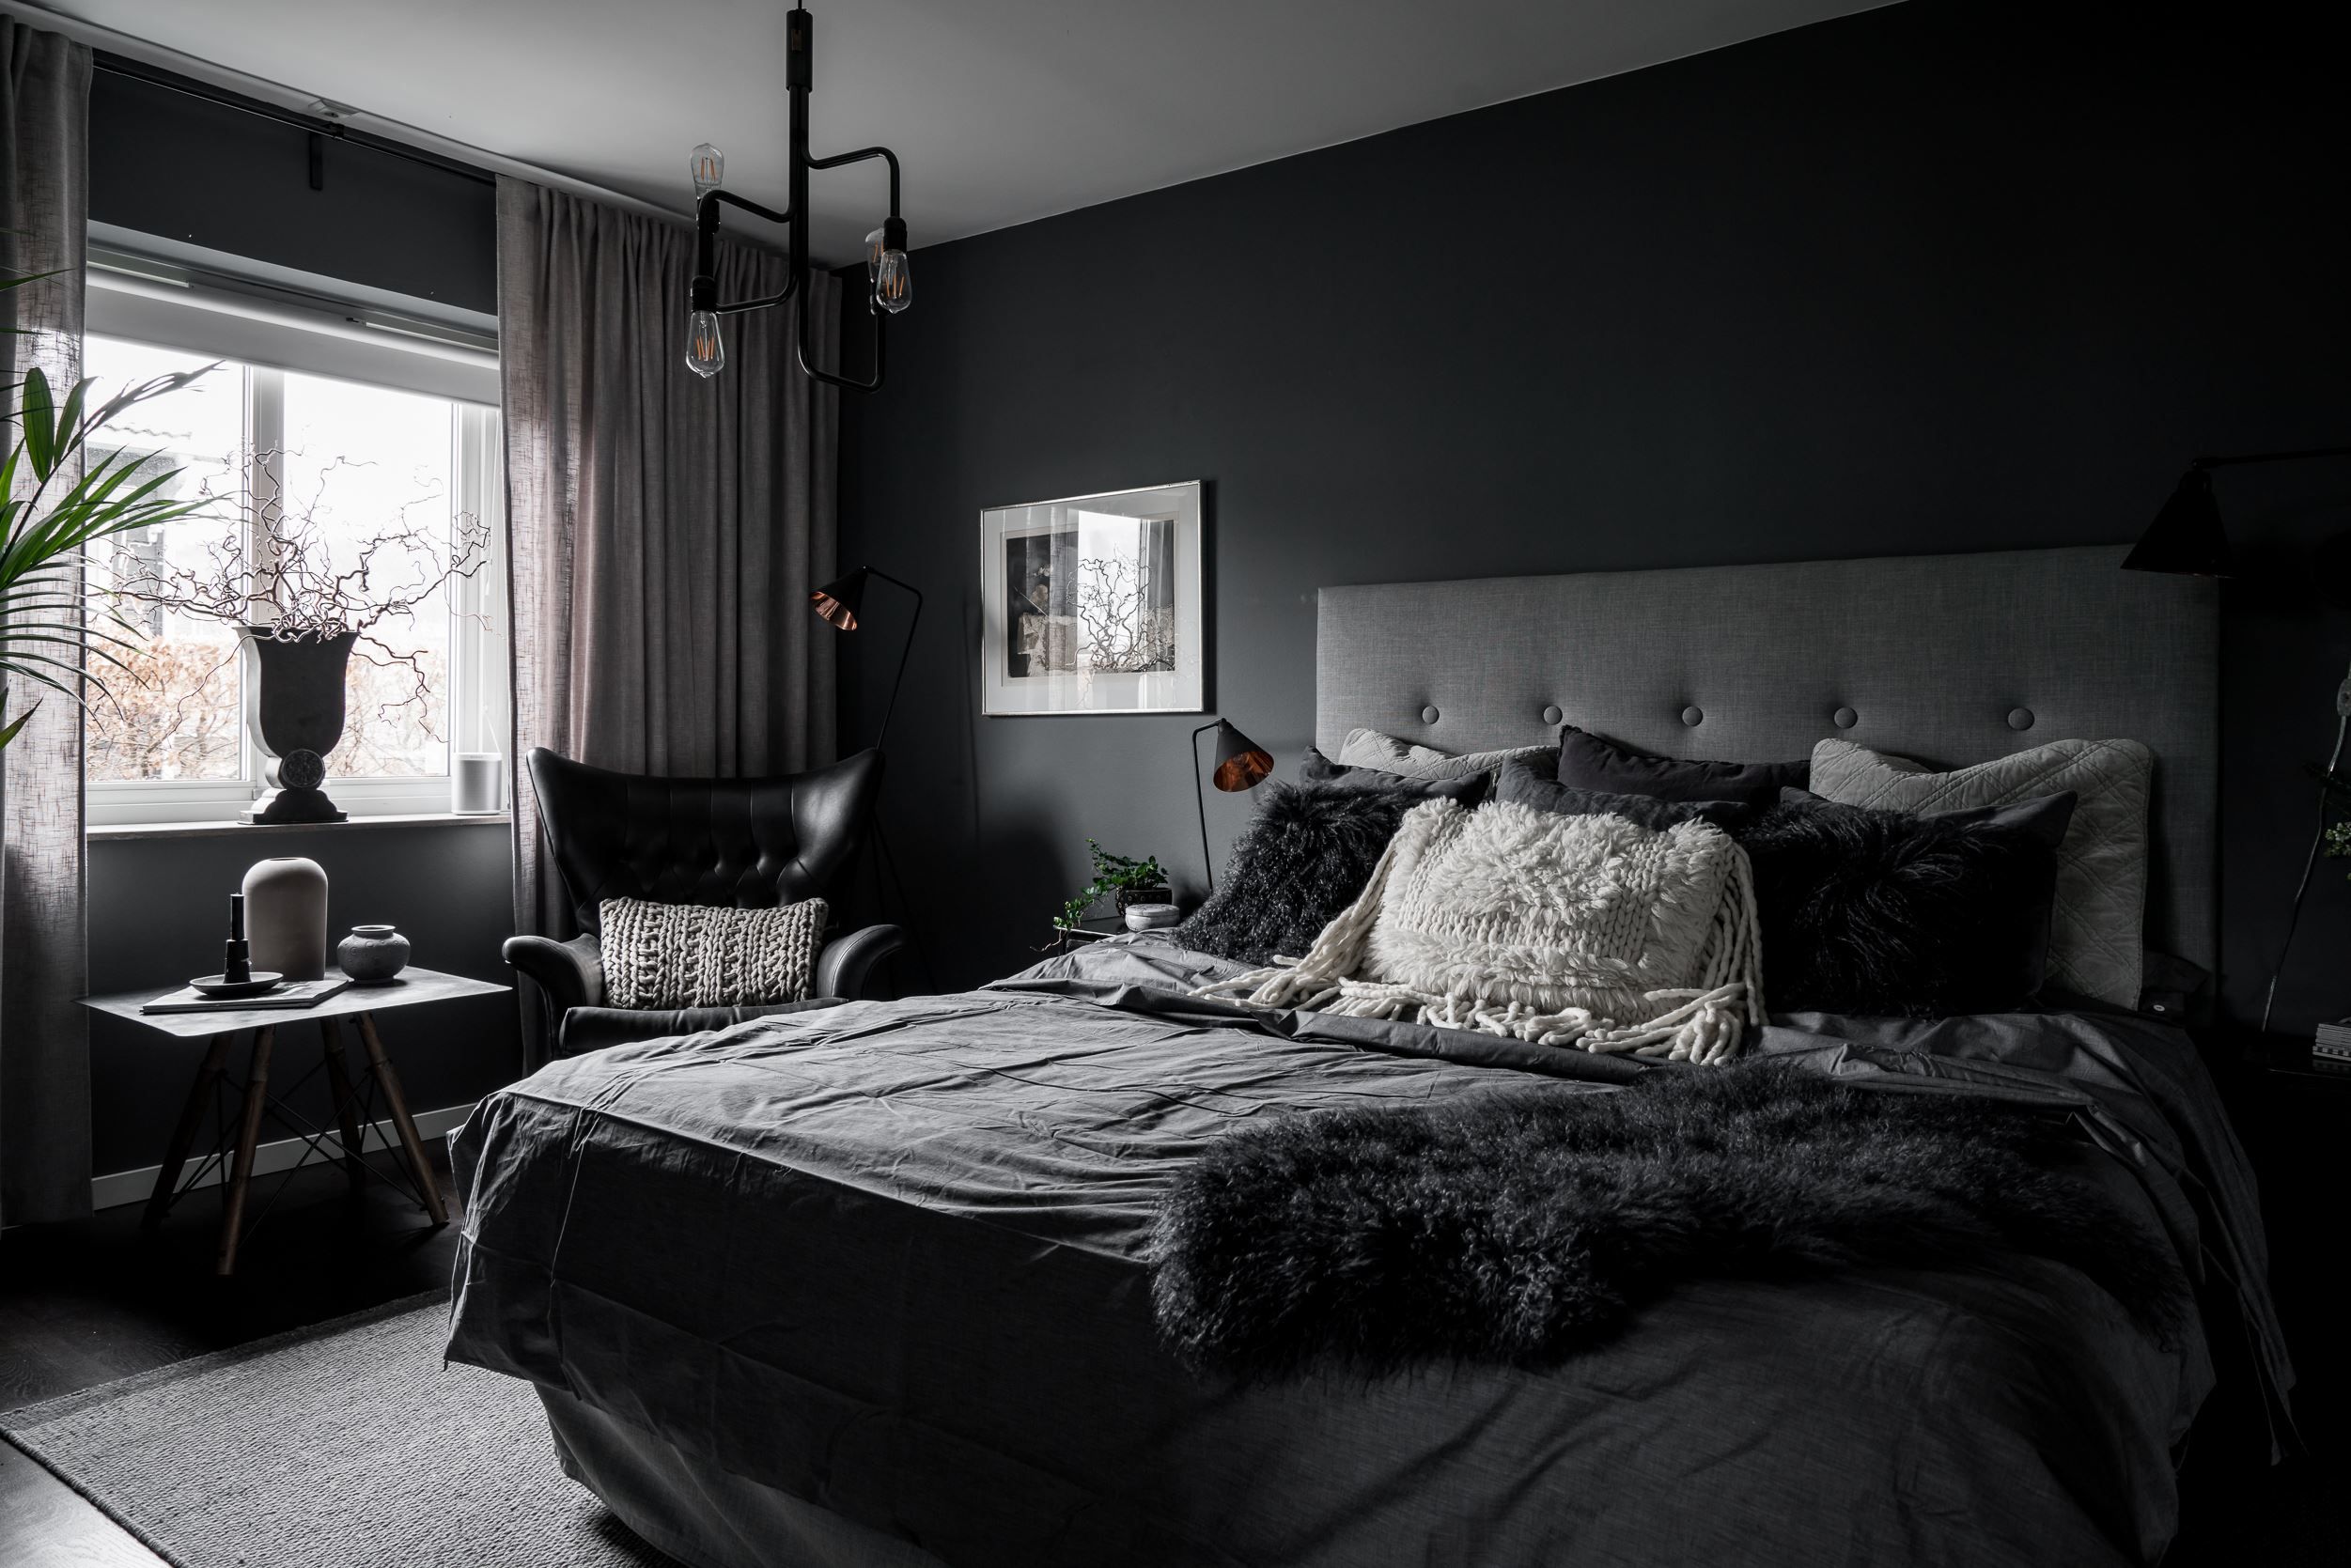 Черные обои в интерьере квартиры: идеи темного дизайна стен на фото